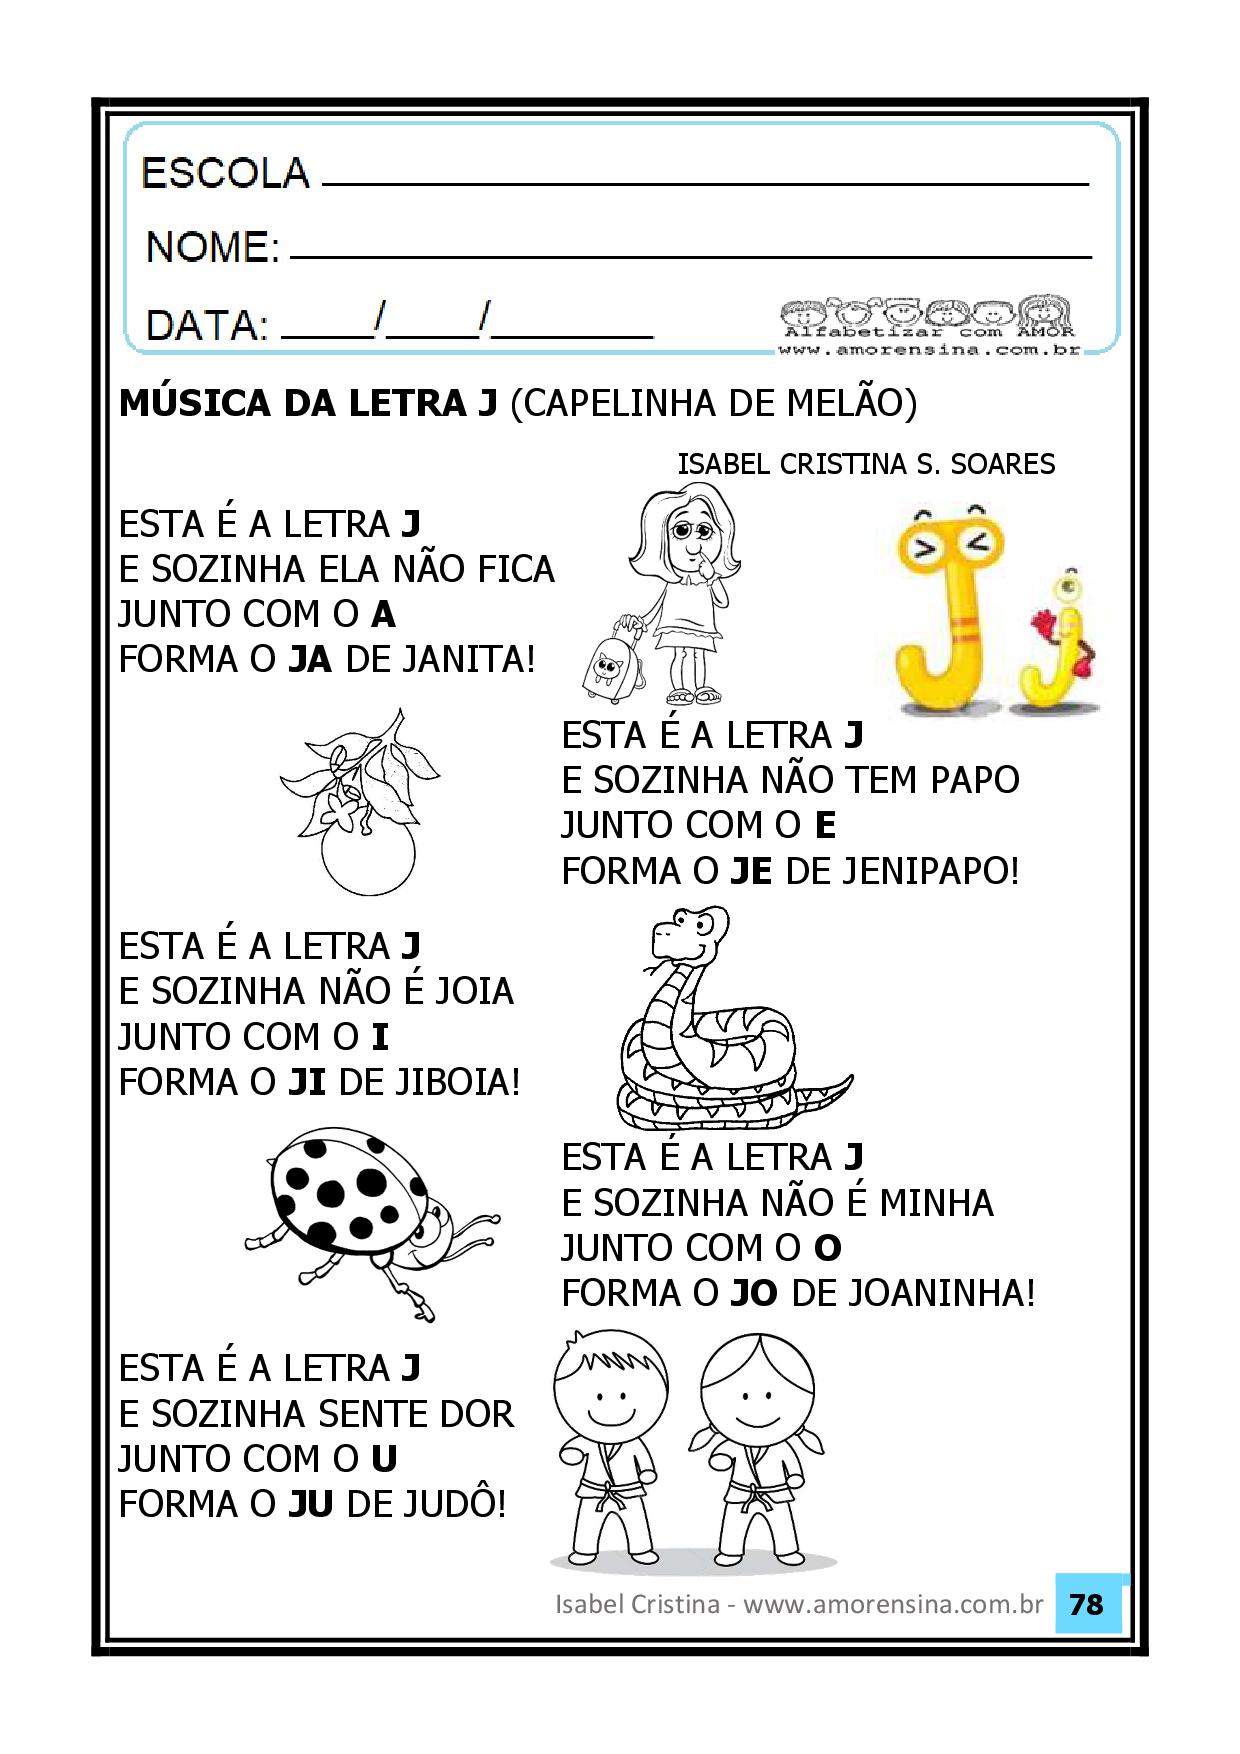 alfabetizacao-apostila-metodo-fonico-pdf - Português